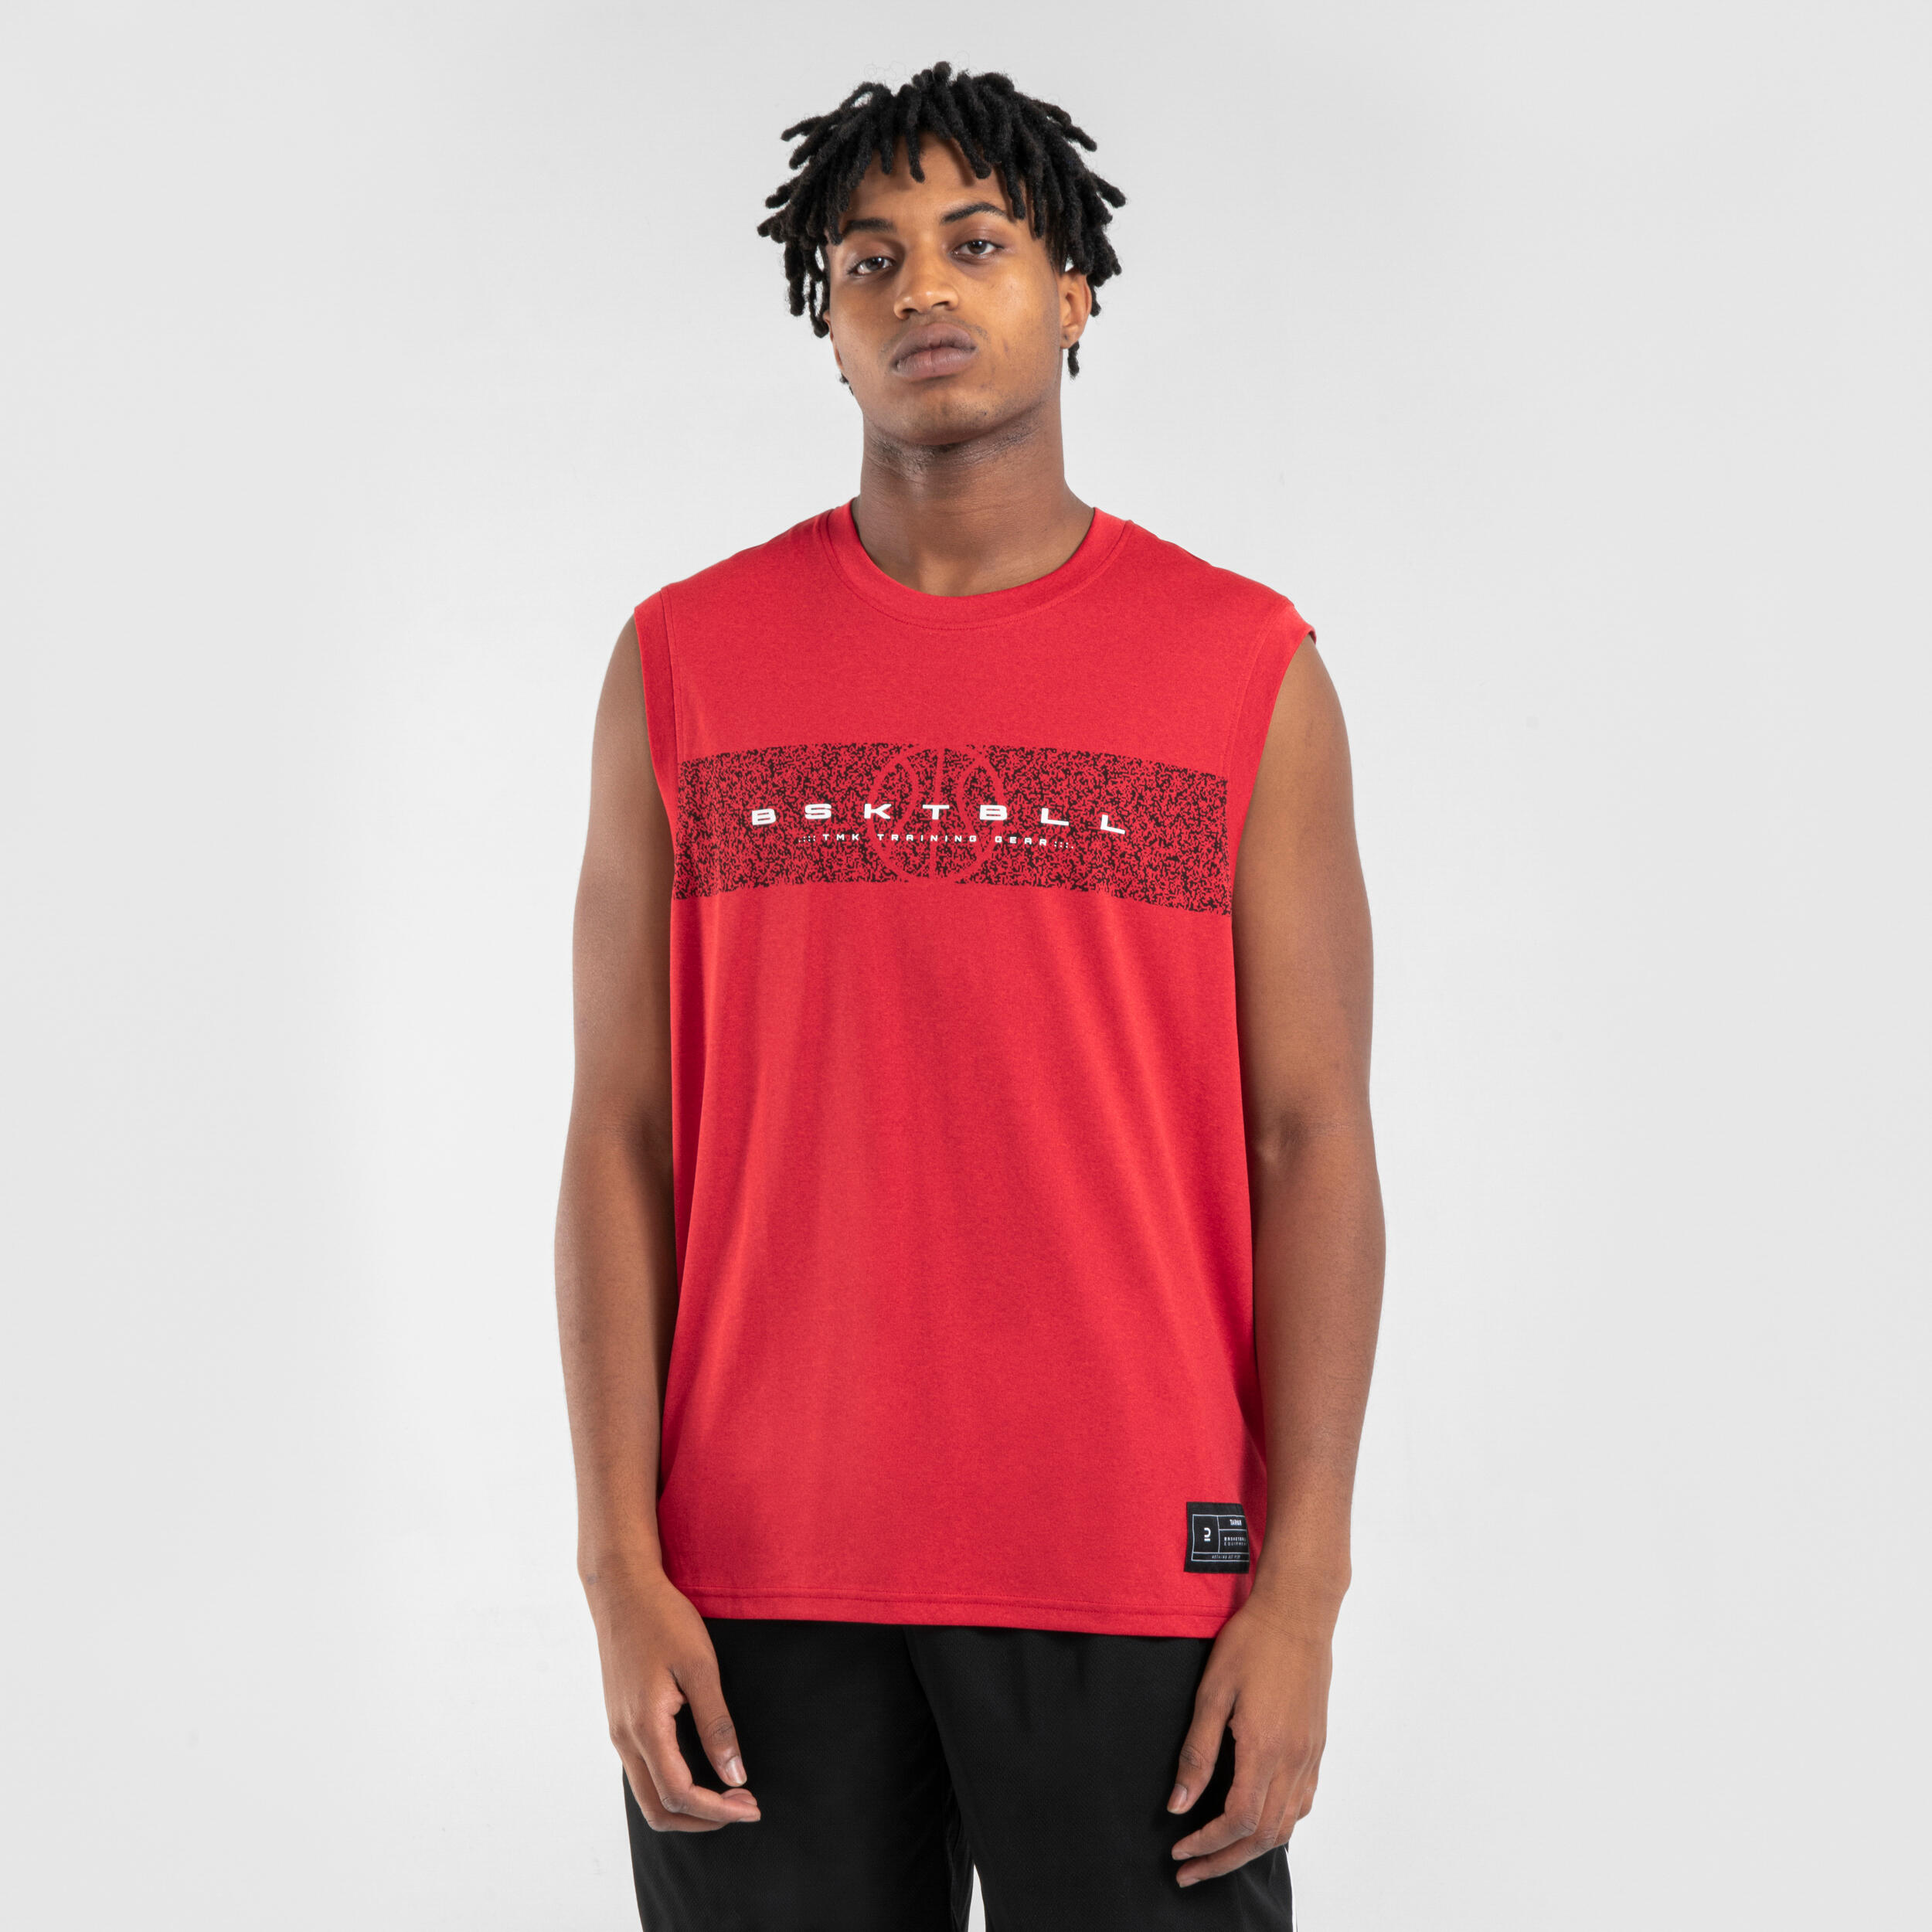 Comprar Camisetas de Baloncesto online - Decathlon